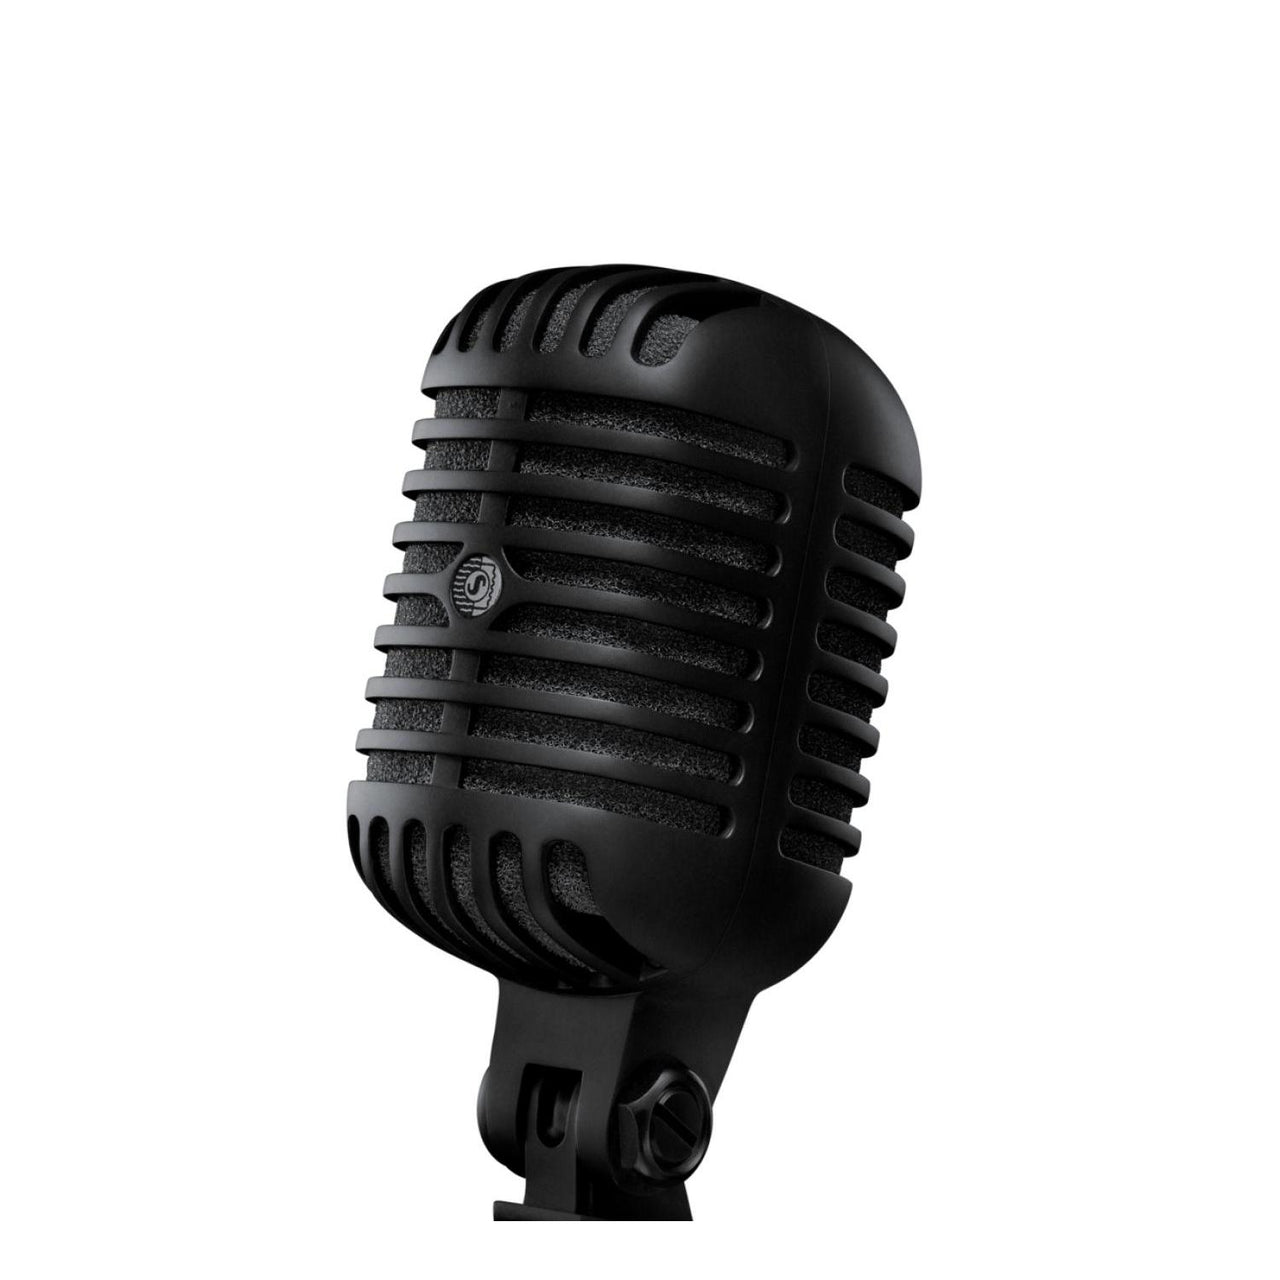 Microfono Shure Vocal De Lujo Apariencia Clasica, Super 55 Black